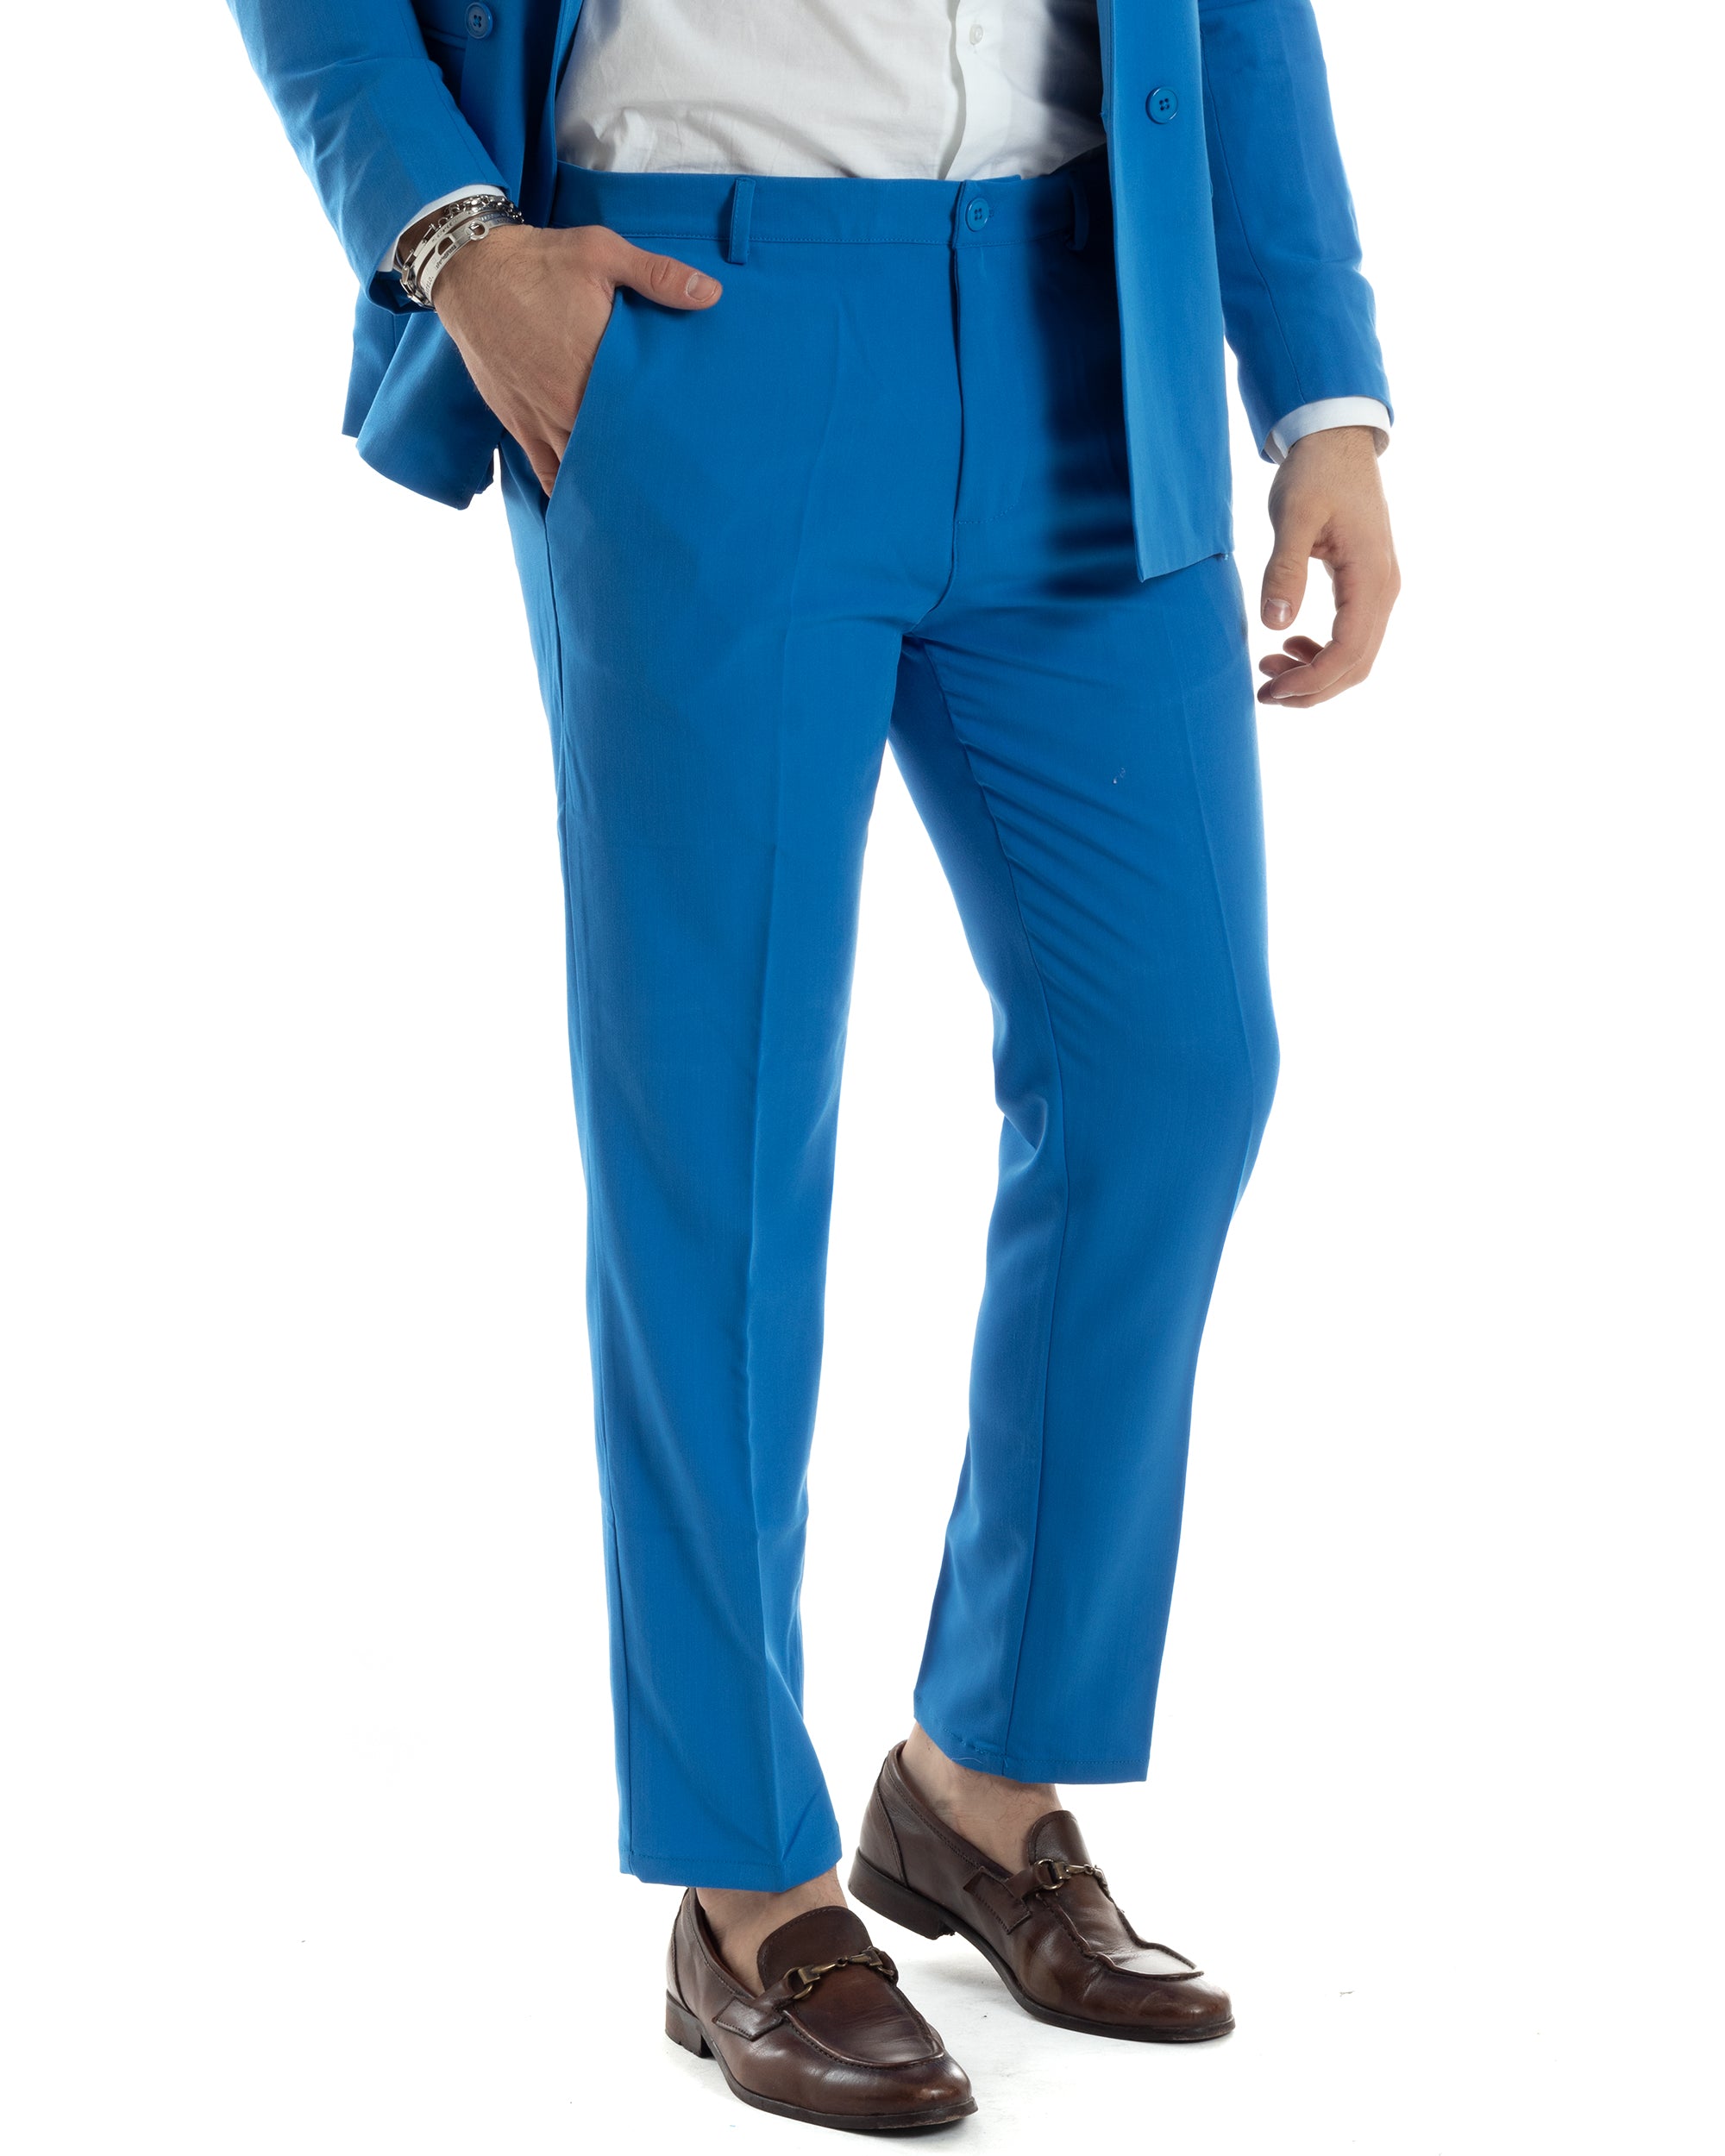 Abito Uomo Monopetto Vestito Completo Giacca Pantaloni Royal Tinta Unita Elegante Casual GIOSAL-AE1029A